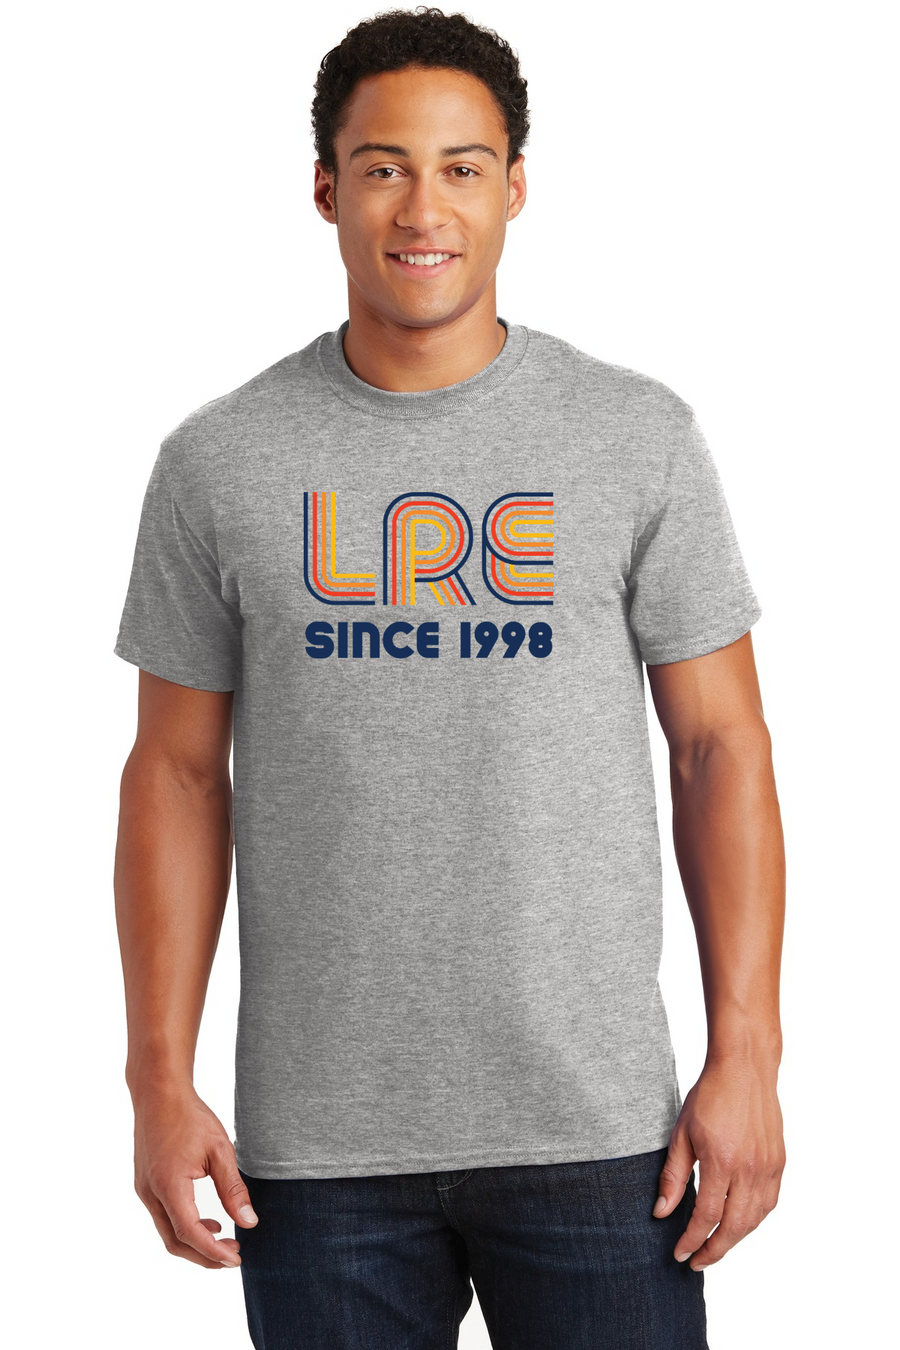 Lang Ranch Elm STAFF Spirit Wear 2023-24-Unisex T-Shirt LRE Since 1998 Logo